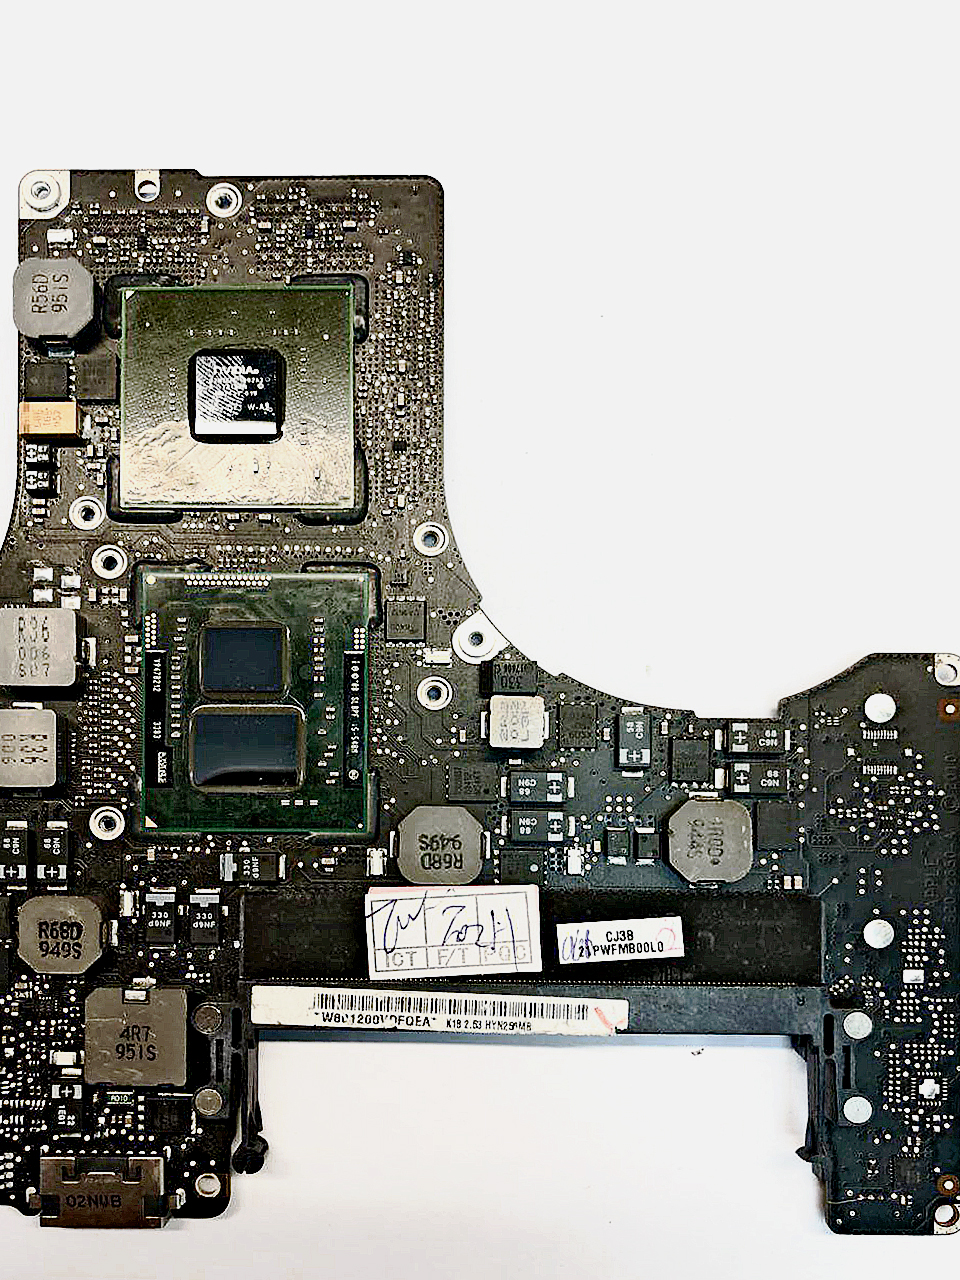 Kernel Panic MacBook Pro 15 2010